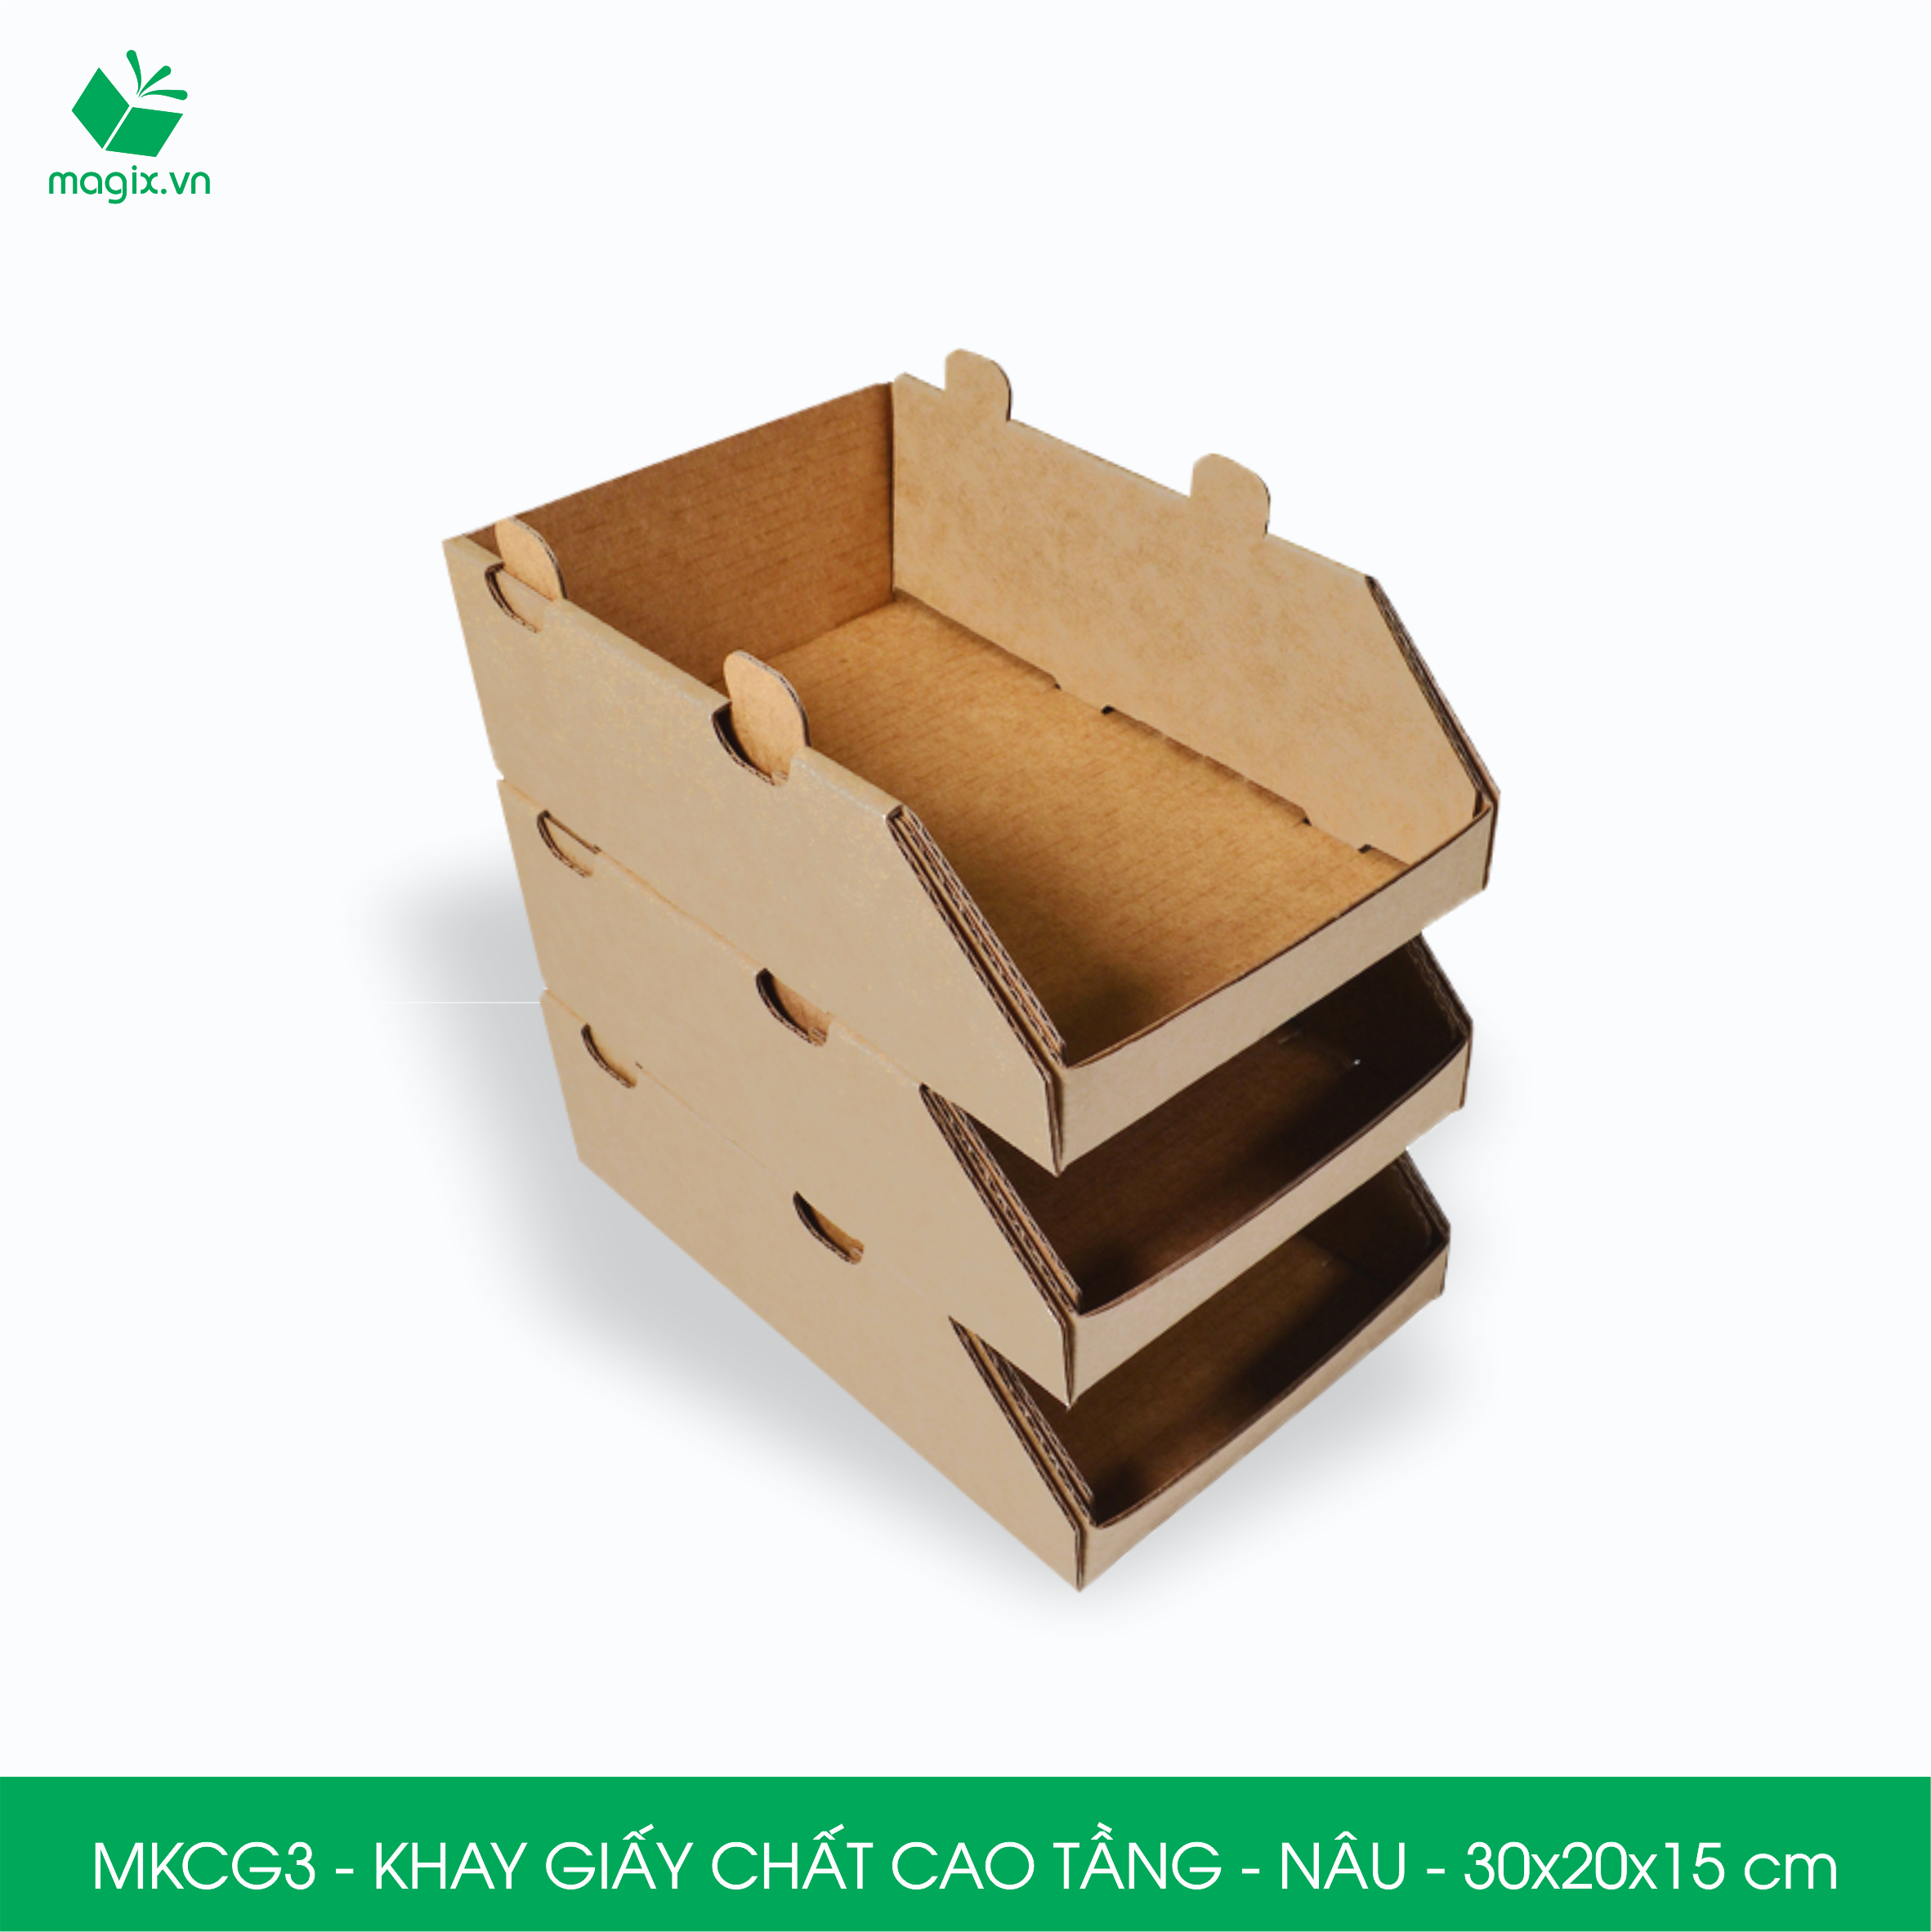 MKCG3 - 30x20x15 cm - 50 Khay giấy chất cao tầng bằng giấy carton siêu cứng, kệ giấy đựng đồ văn phòng, khay đựng dụng cụ, khay linh kiện, kệ phân loại dụng cụ